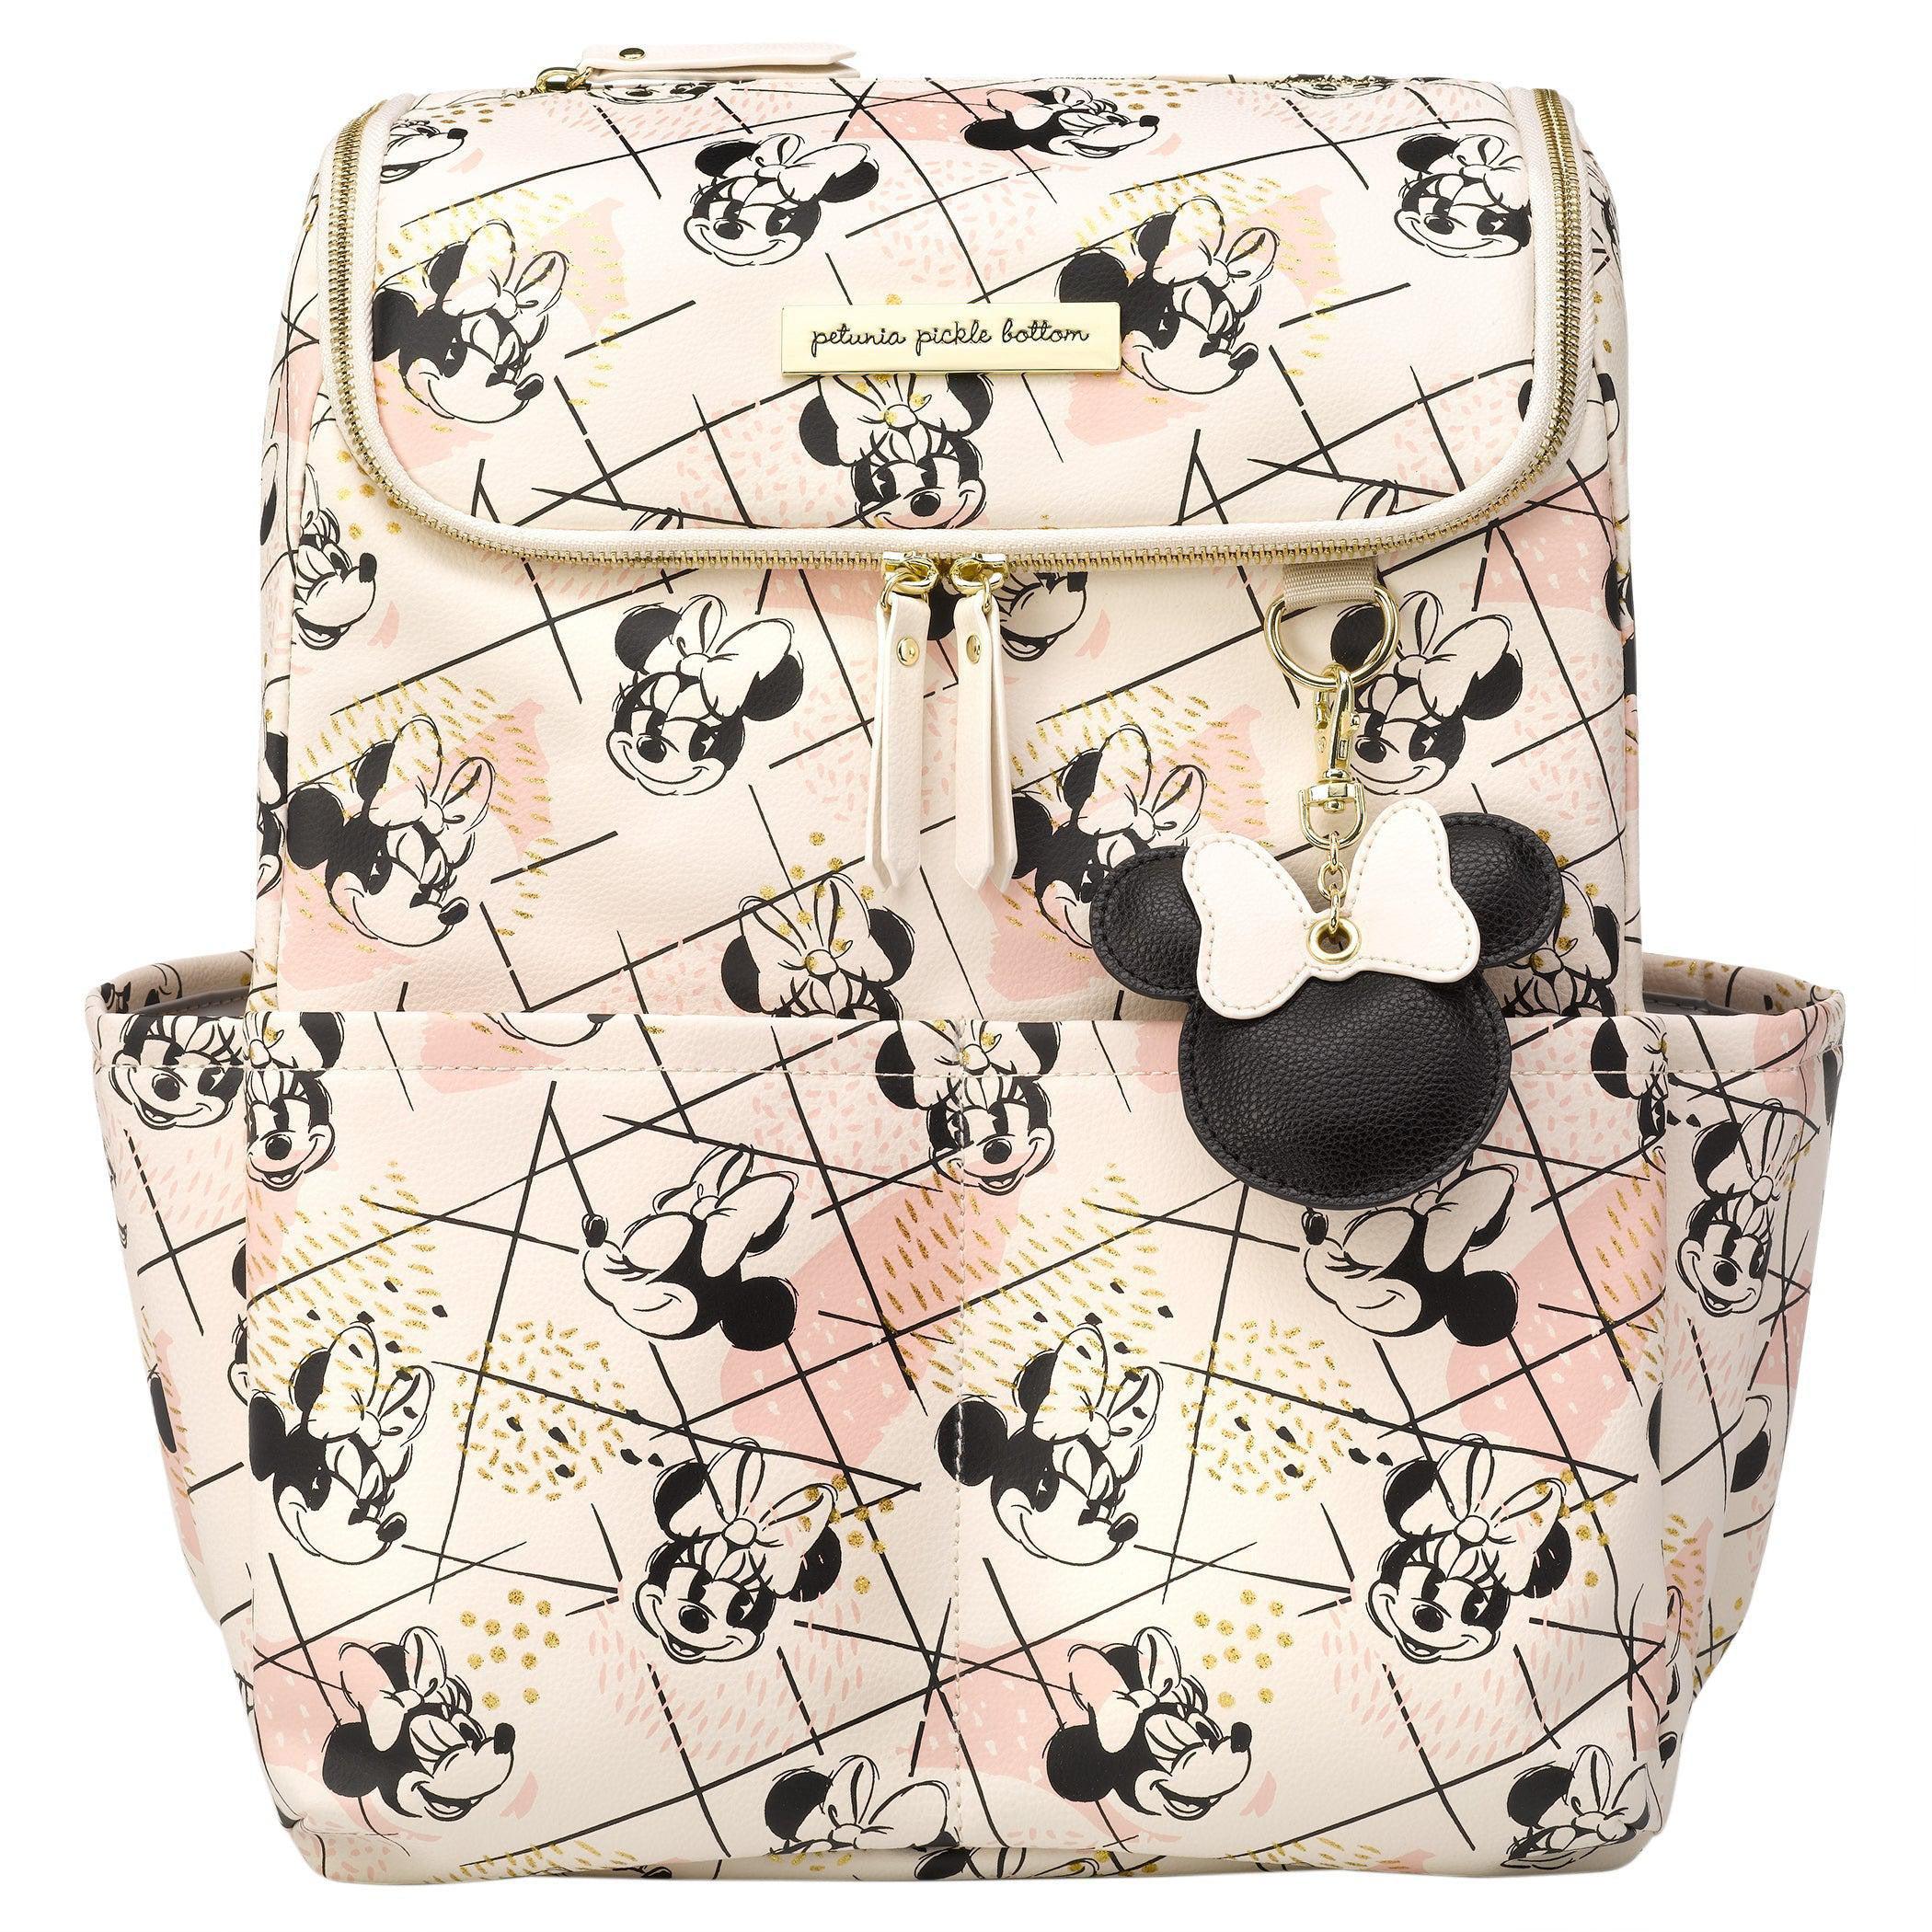 nadering helder omverwerping Method Backpack in Shimmery Minnie Mouse – Petunia Pickle Bottom